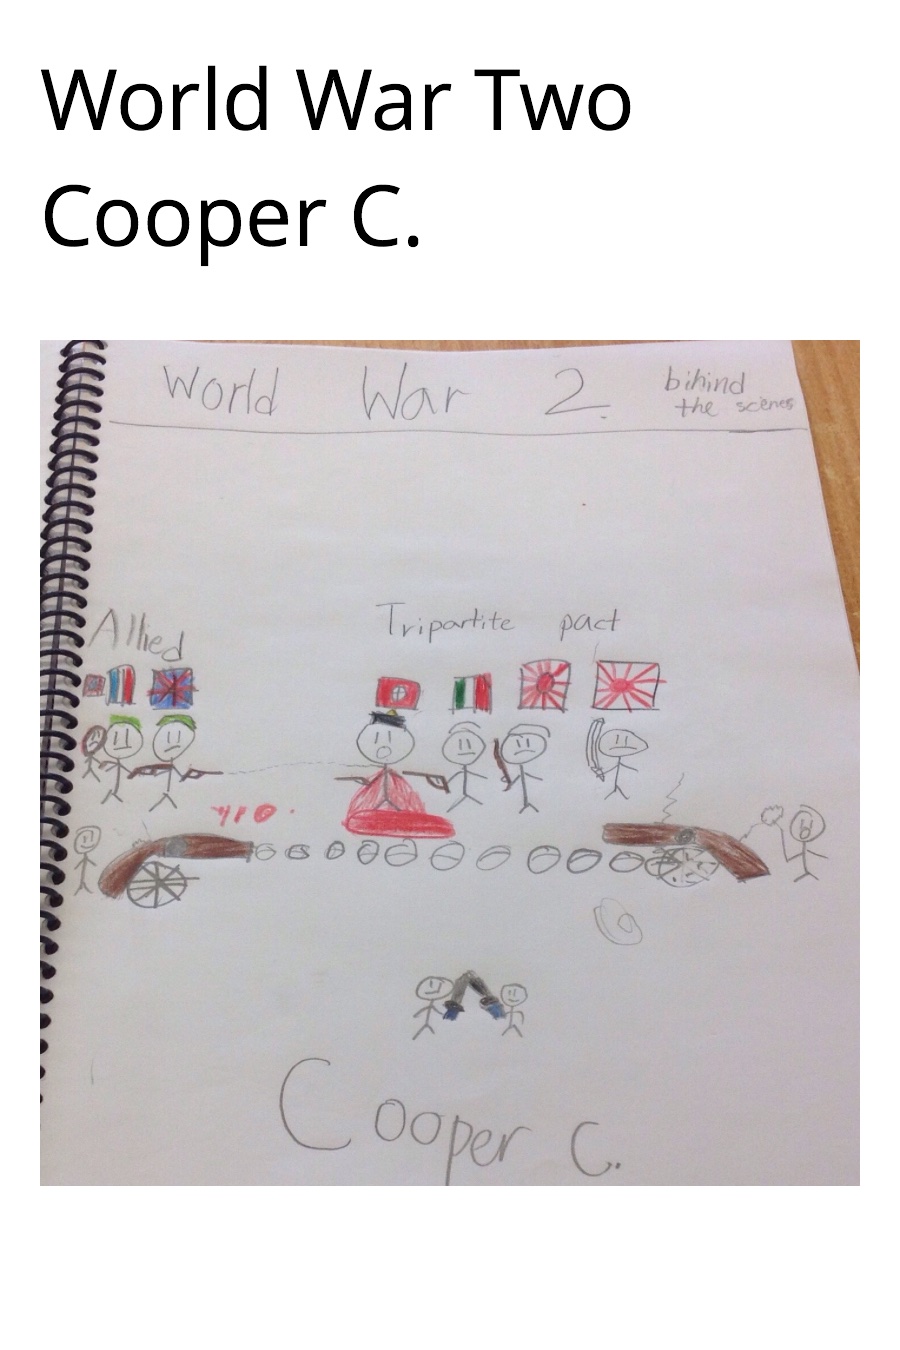 World War 2 by Cooper C